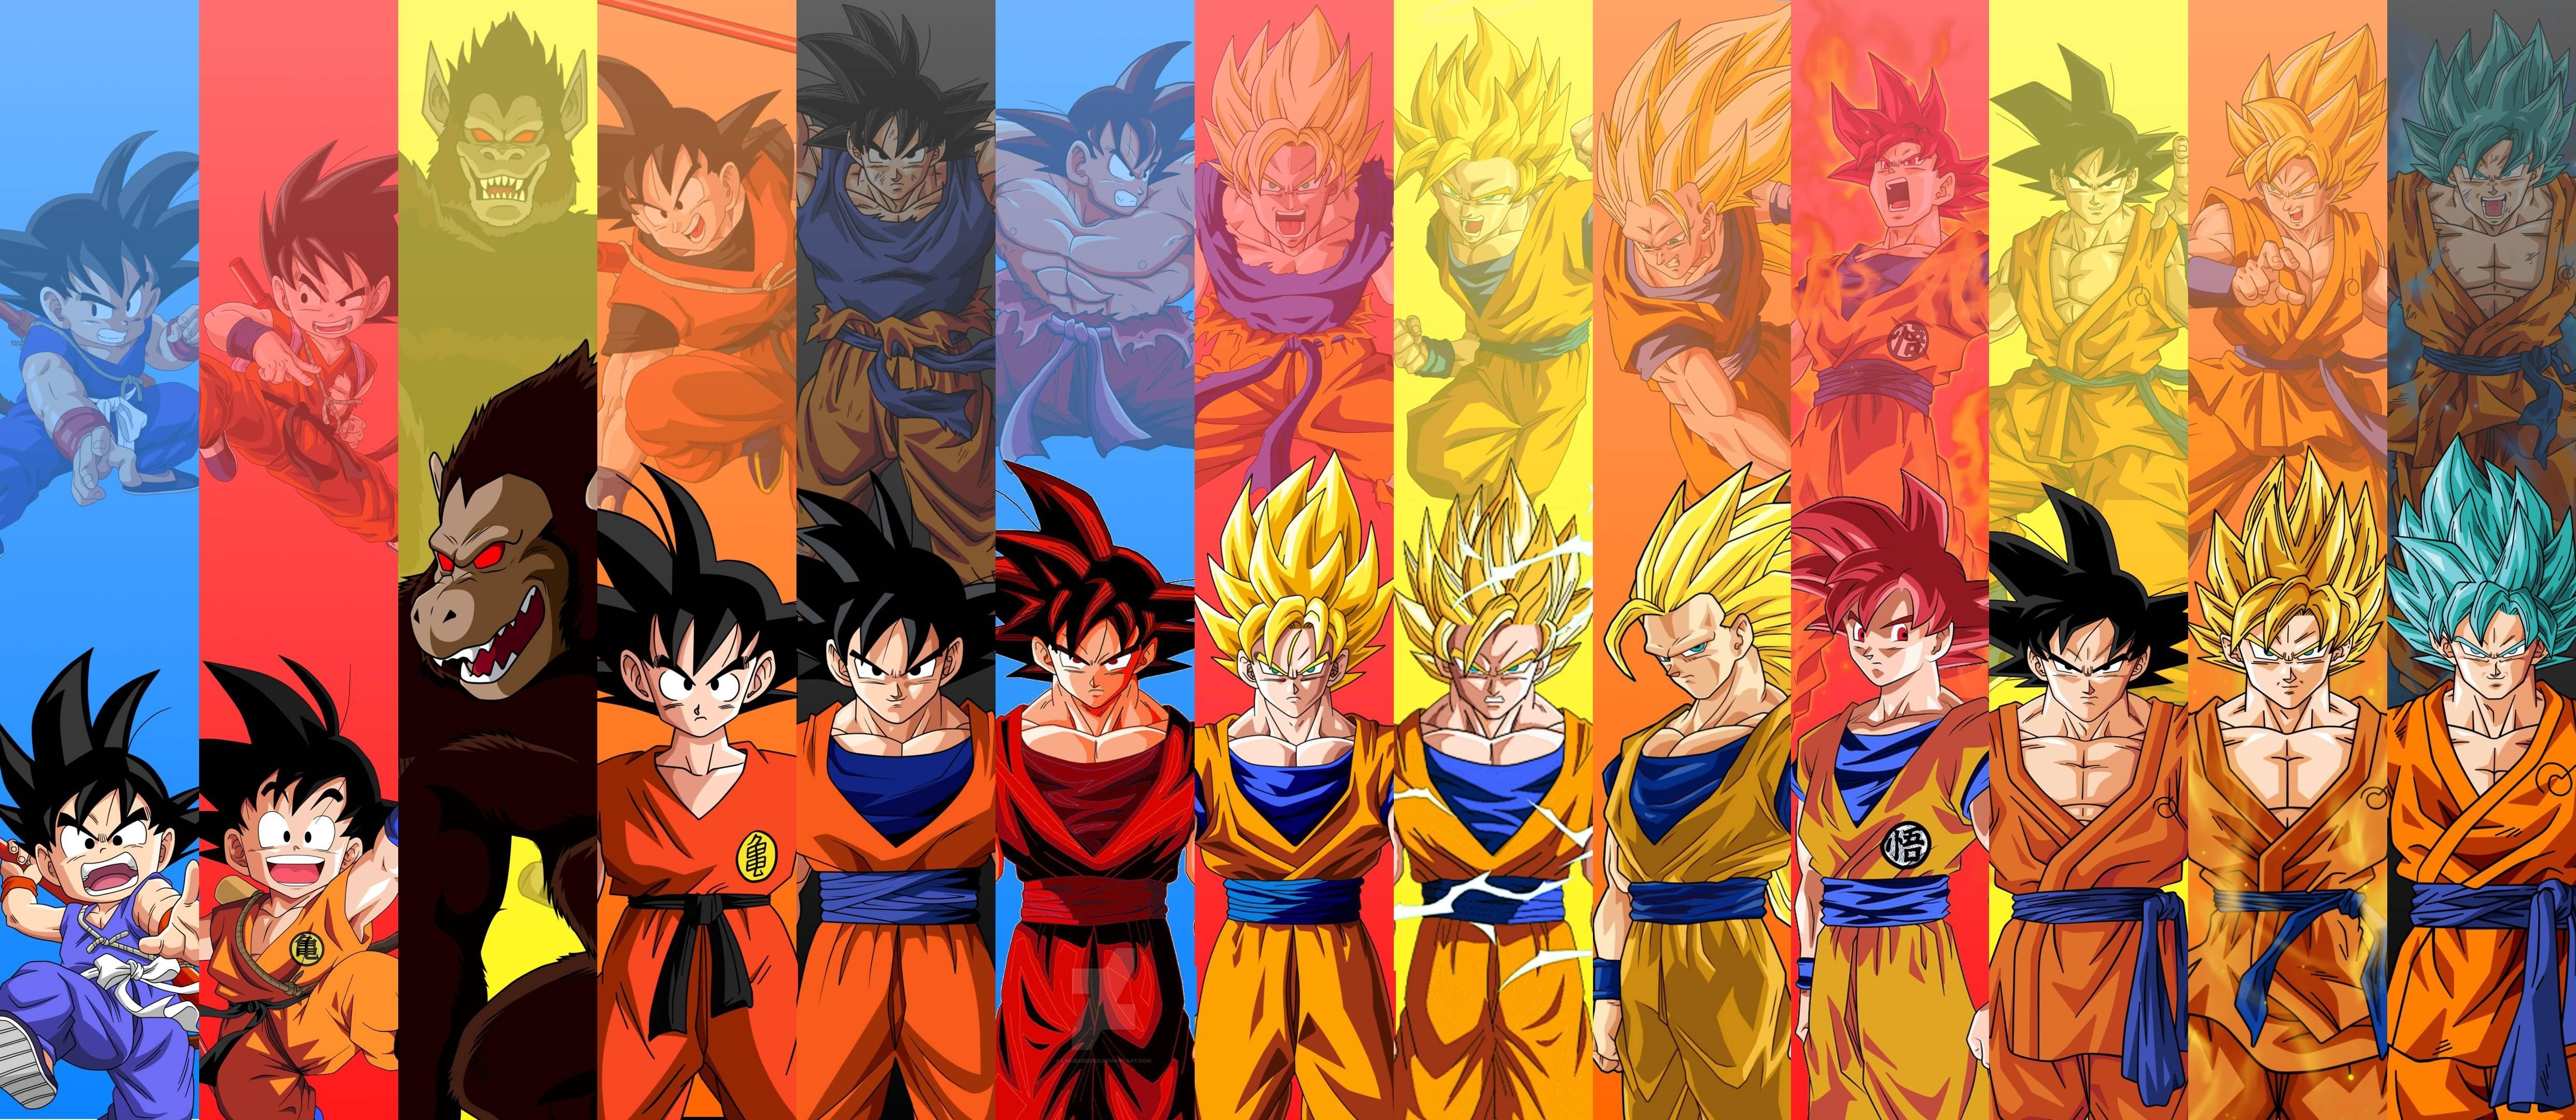 Son Goku Wallpaper. Image Wallpaper. Goku wallpaper